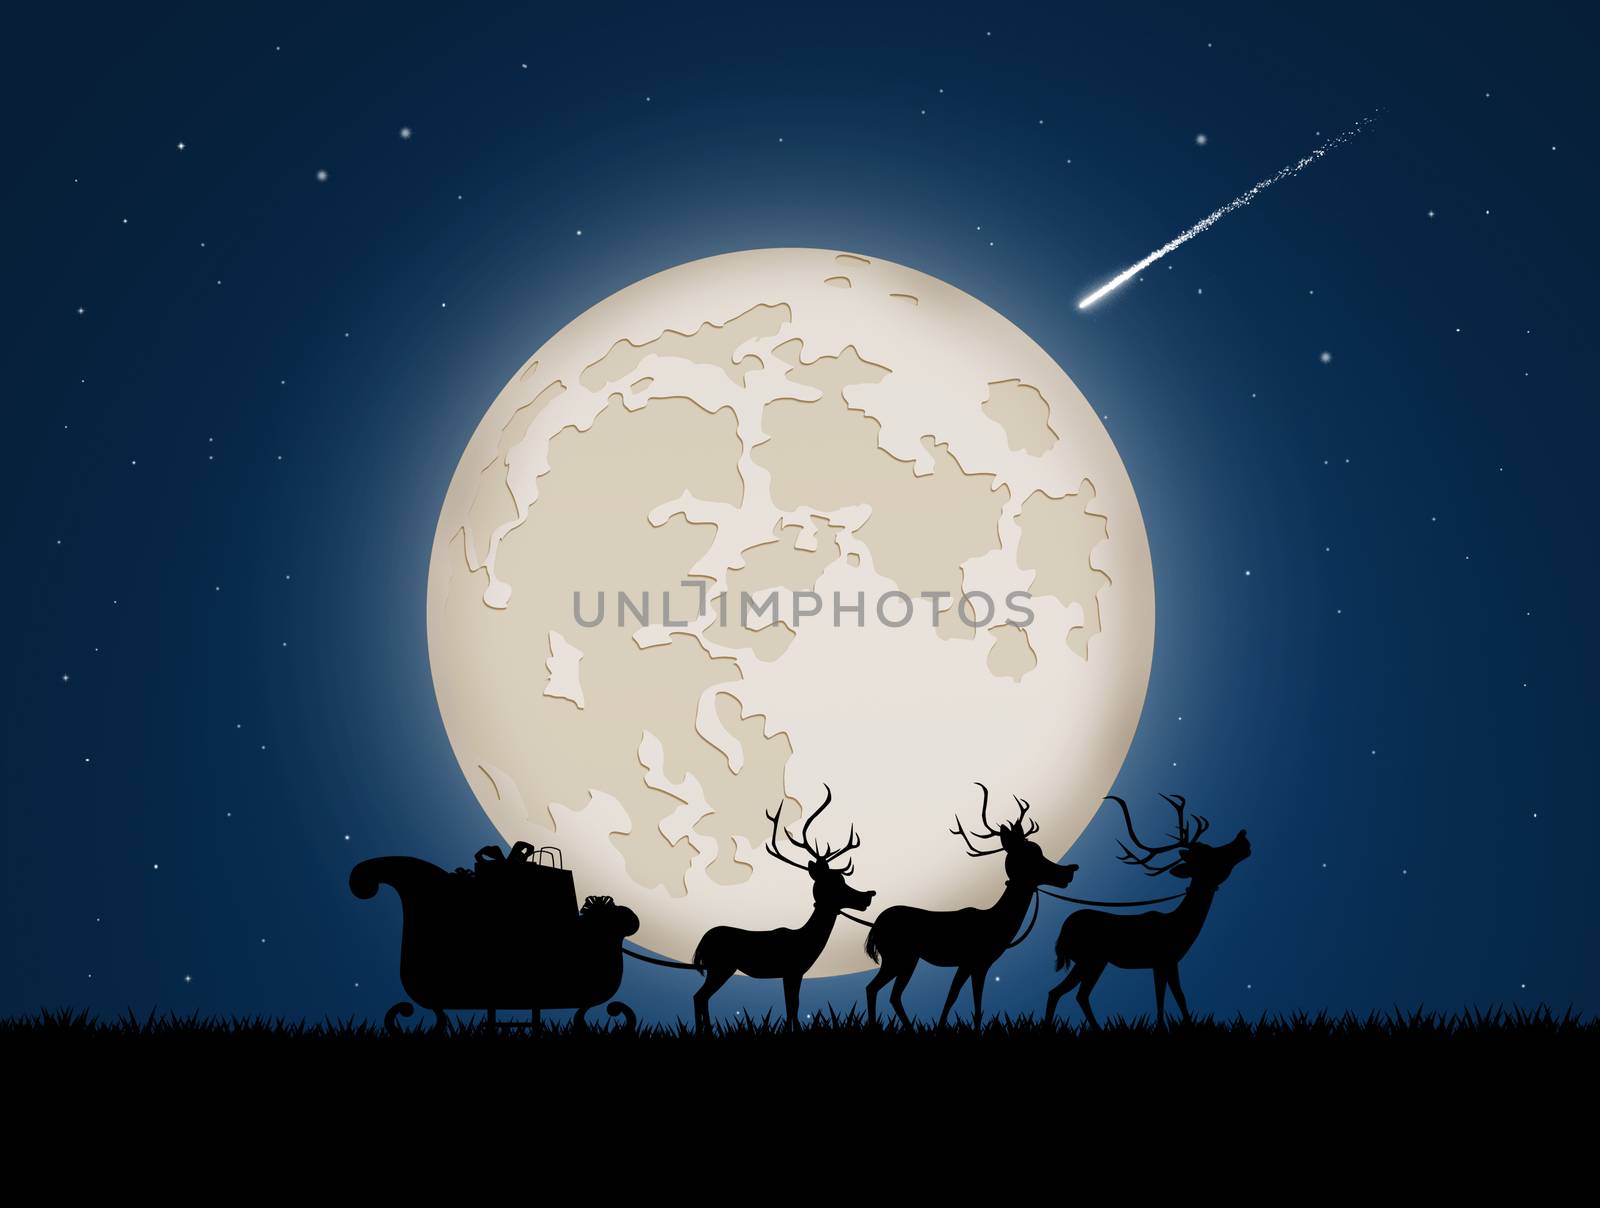 Santa sleigh with reindeer in the moonlight